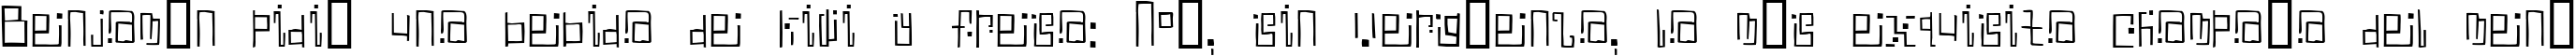 Пример написания шрифтом Antimony Blue текста на испанском